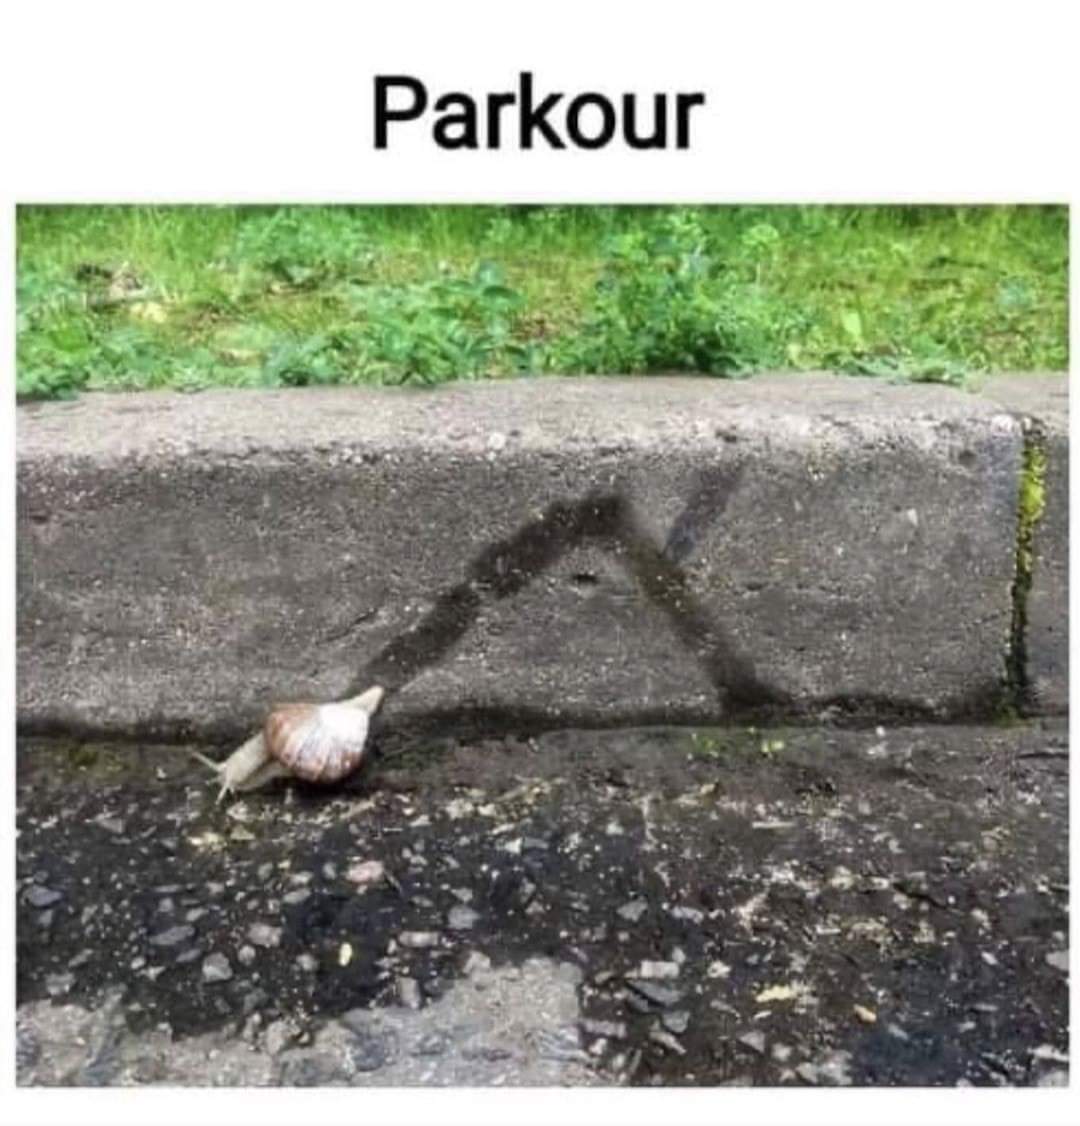 Peter Parkour - meme